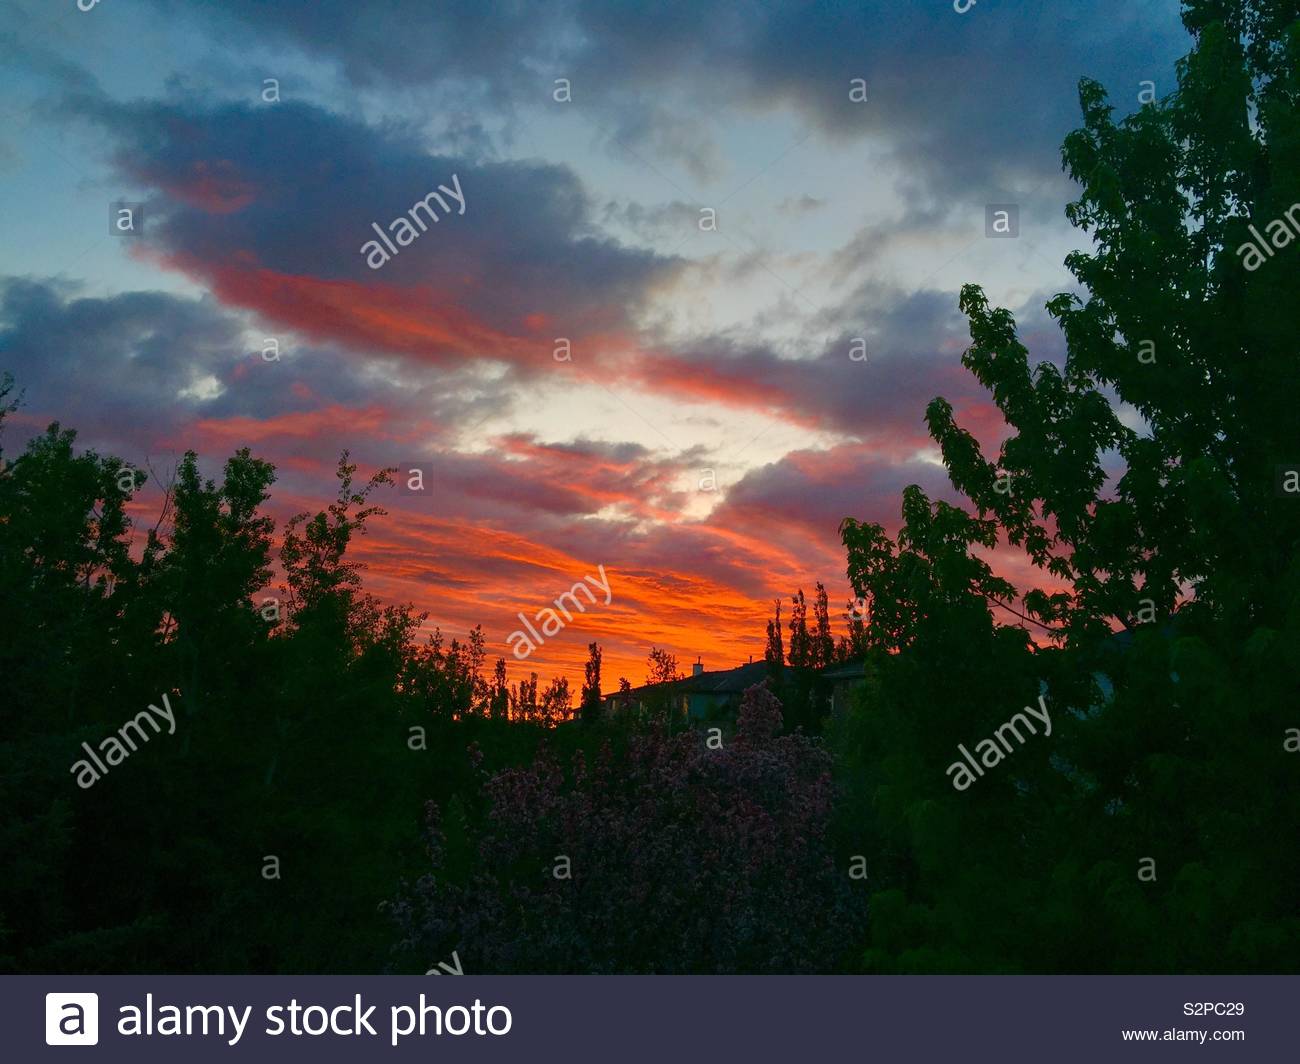 Sunrise, 5:20 AM, June 4th, Calgary, Alberta, Canada. Stock Photo